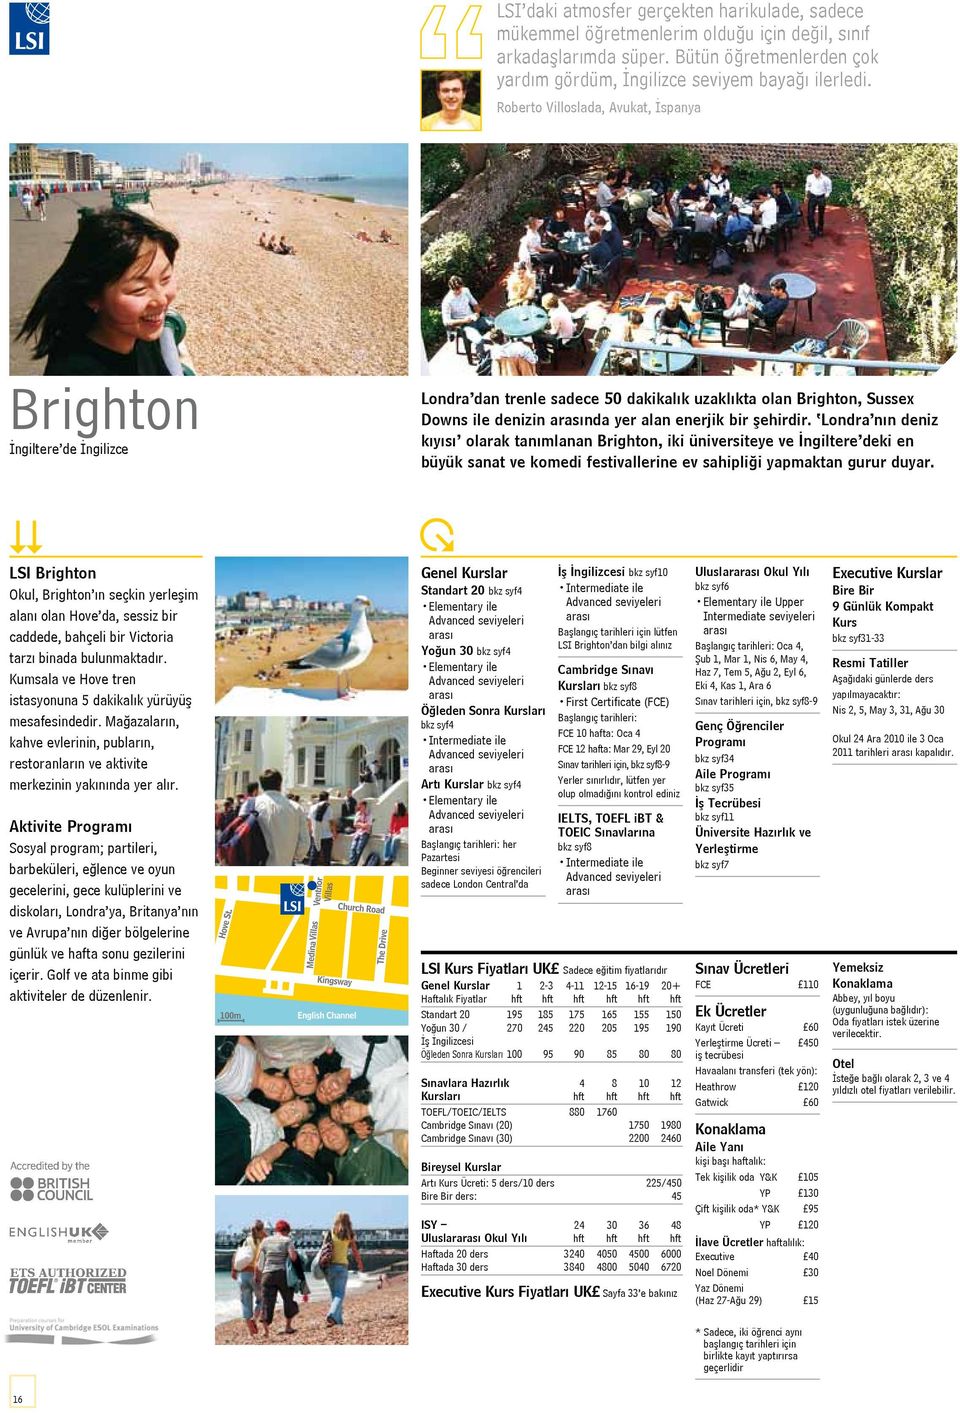 Londra nın deniz kıyısı olarak tanımlanan Brighton, iki üniversiteye ve İngiltere deki en büyük sanat ve komedi festivallerine ev sahipliği yapmaktan gurur duyar.